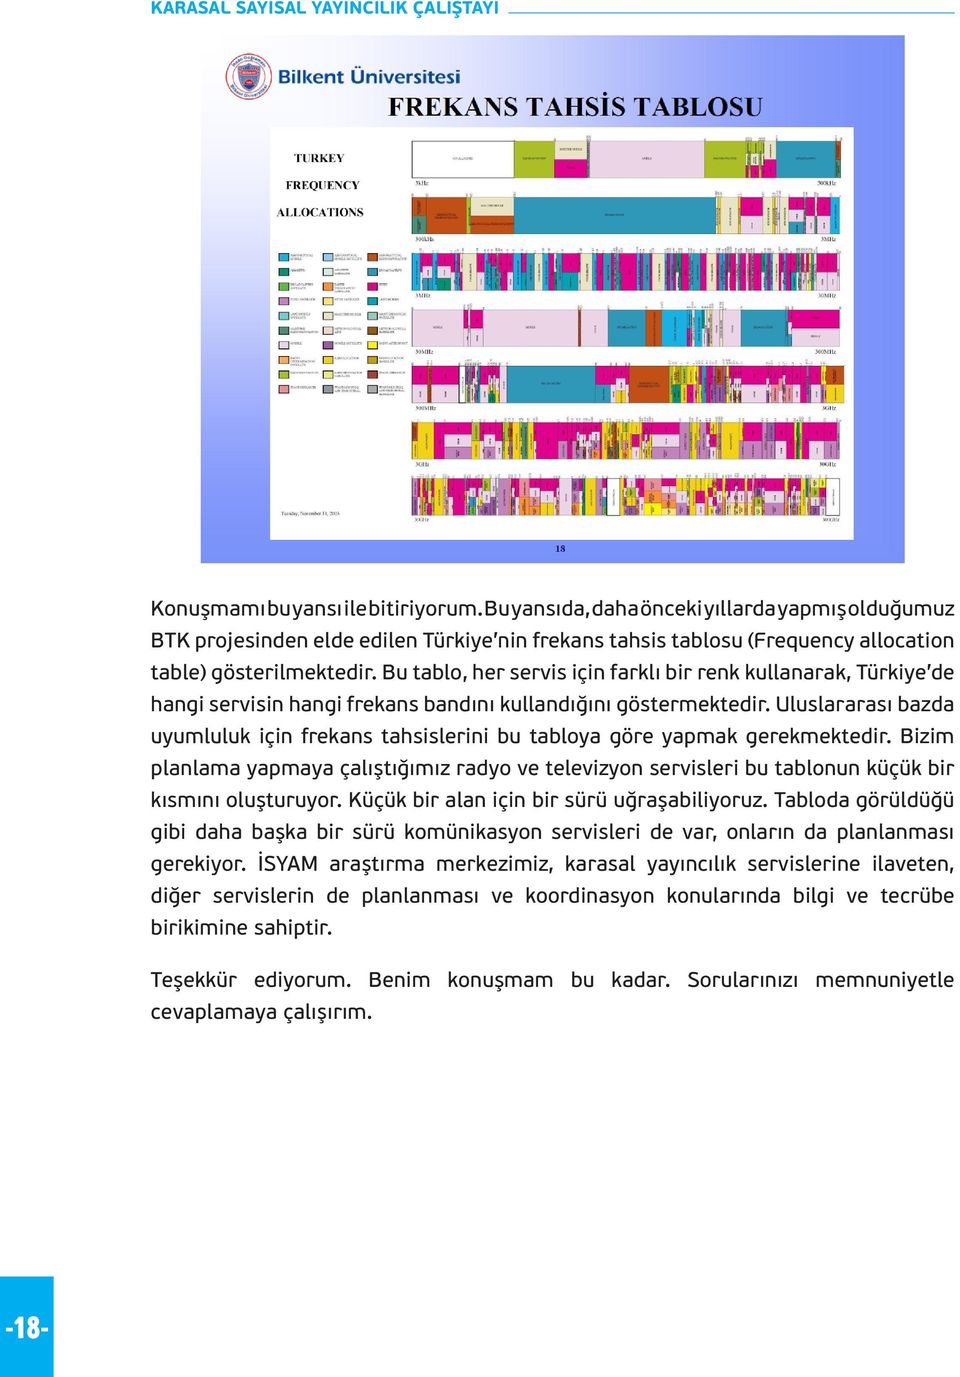 Bu tablo, her servis için farklı bir renk kullanarak, Türkiye de hangi servisin hangi frekans bandını kullandığını göstermektedir.